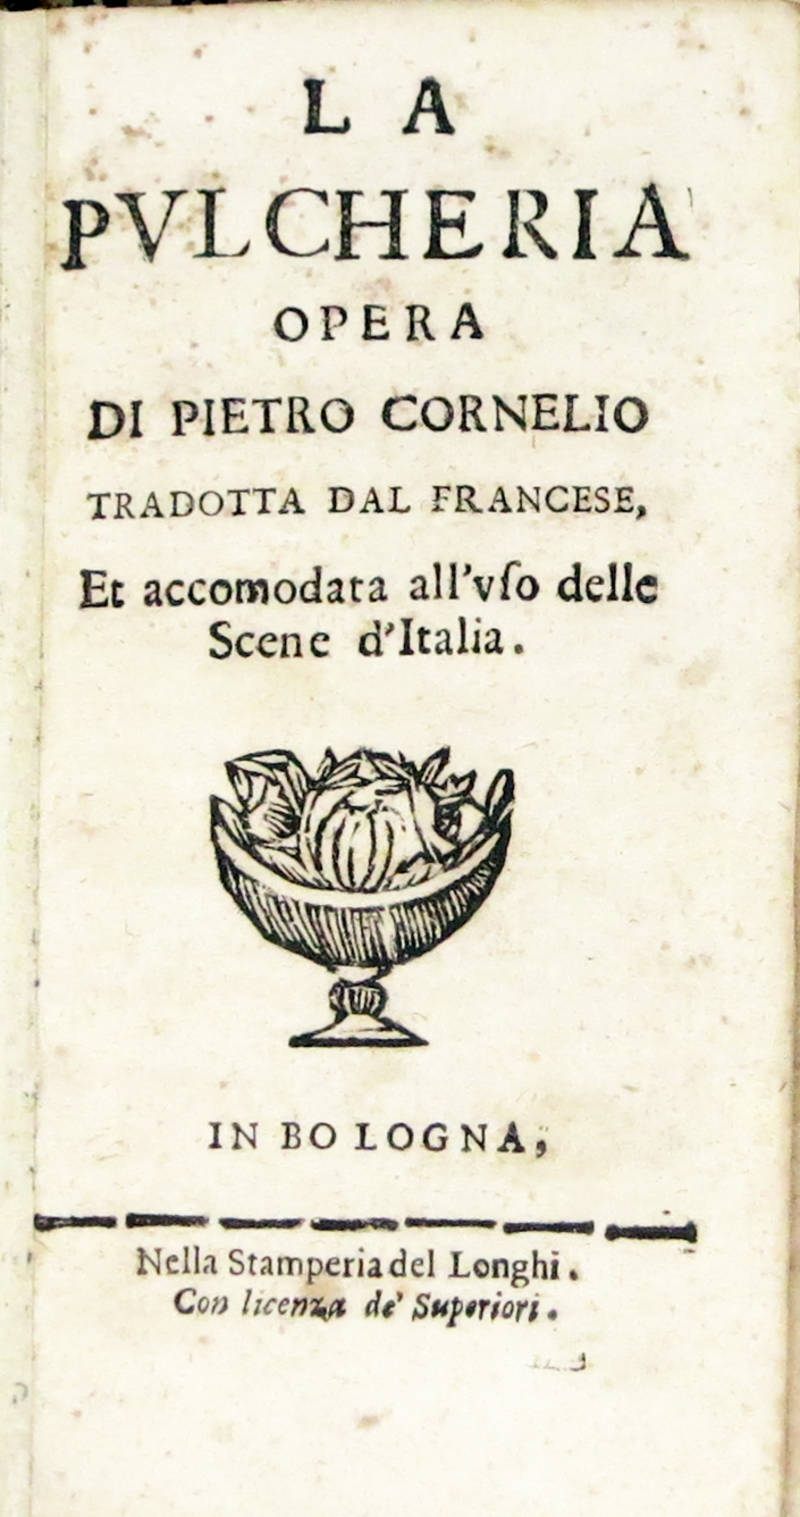 La Pulcheria opera di...Tradotta dal francese, et accomodata all'uso delle Scene d'Italia.